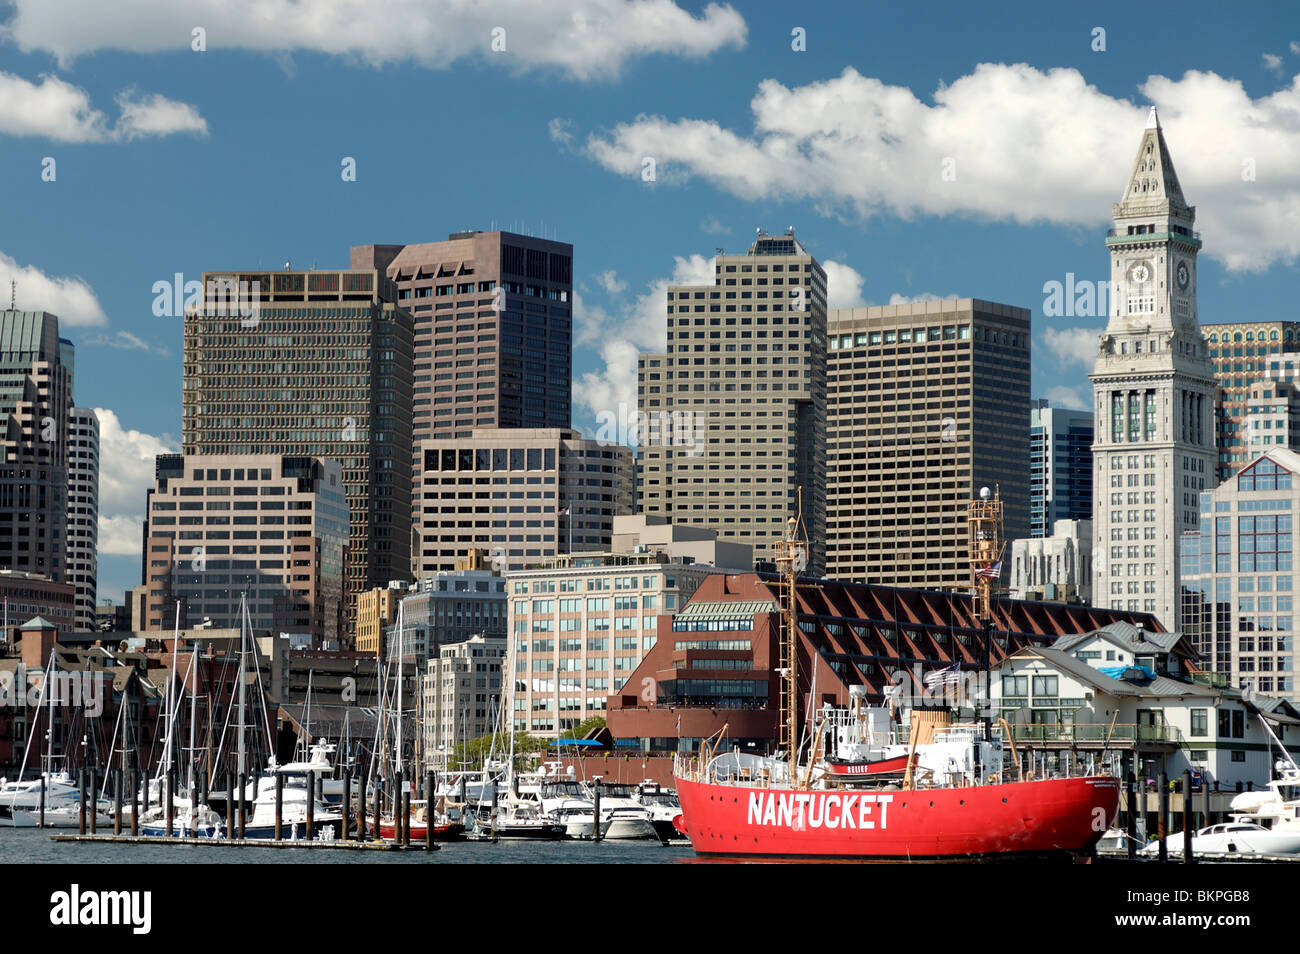 Fotografia di stock di skyline di Boston con lightship Nantucket visto dal porto di Boston, Massachusetts, USA. Foto Stock